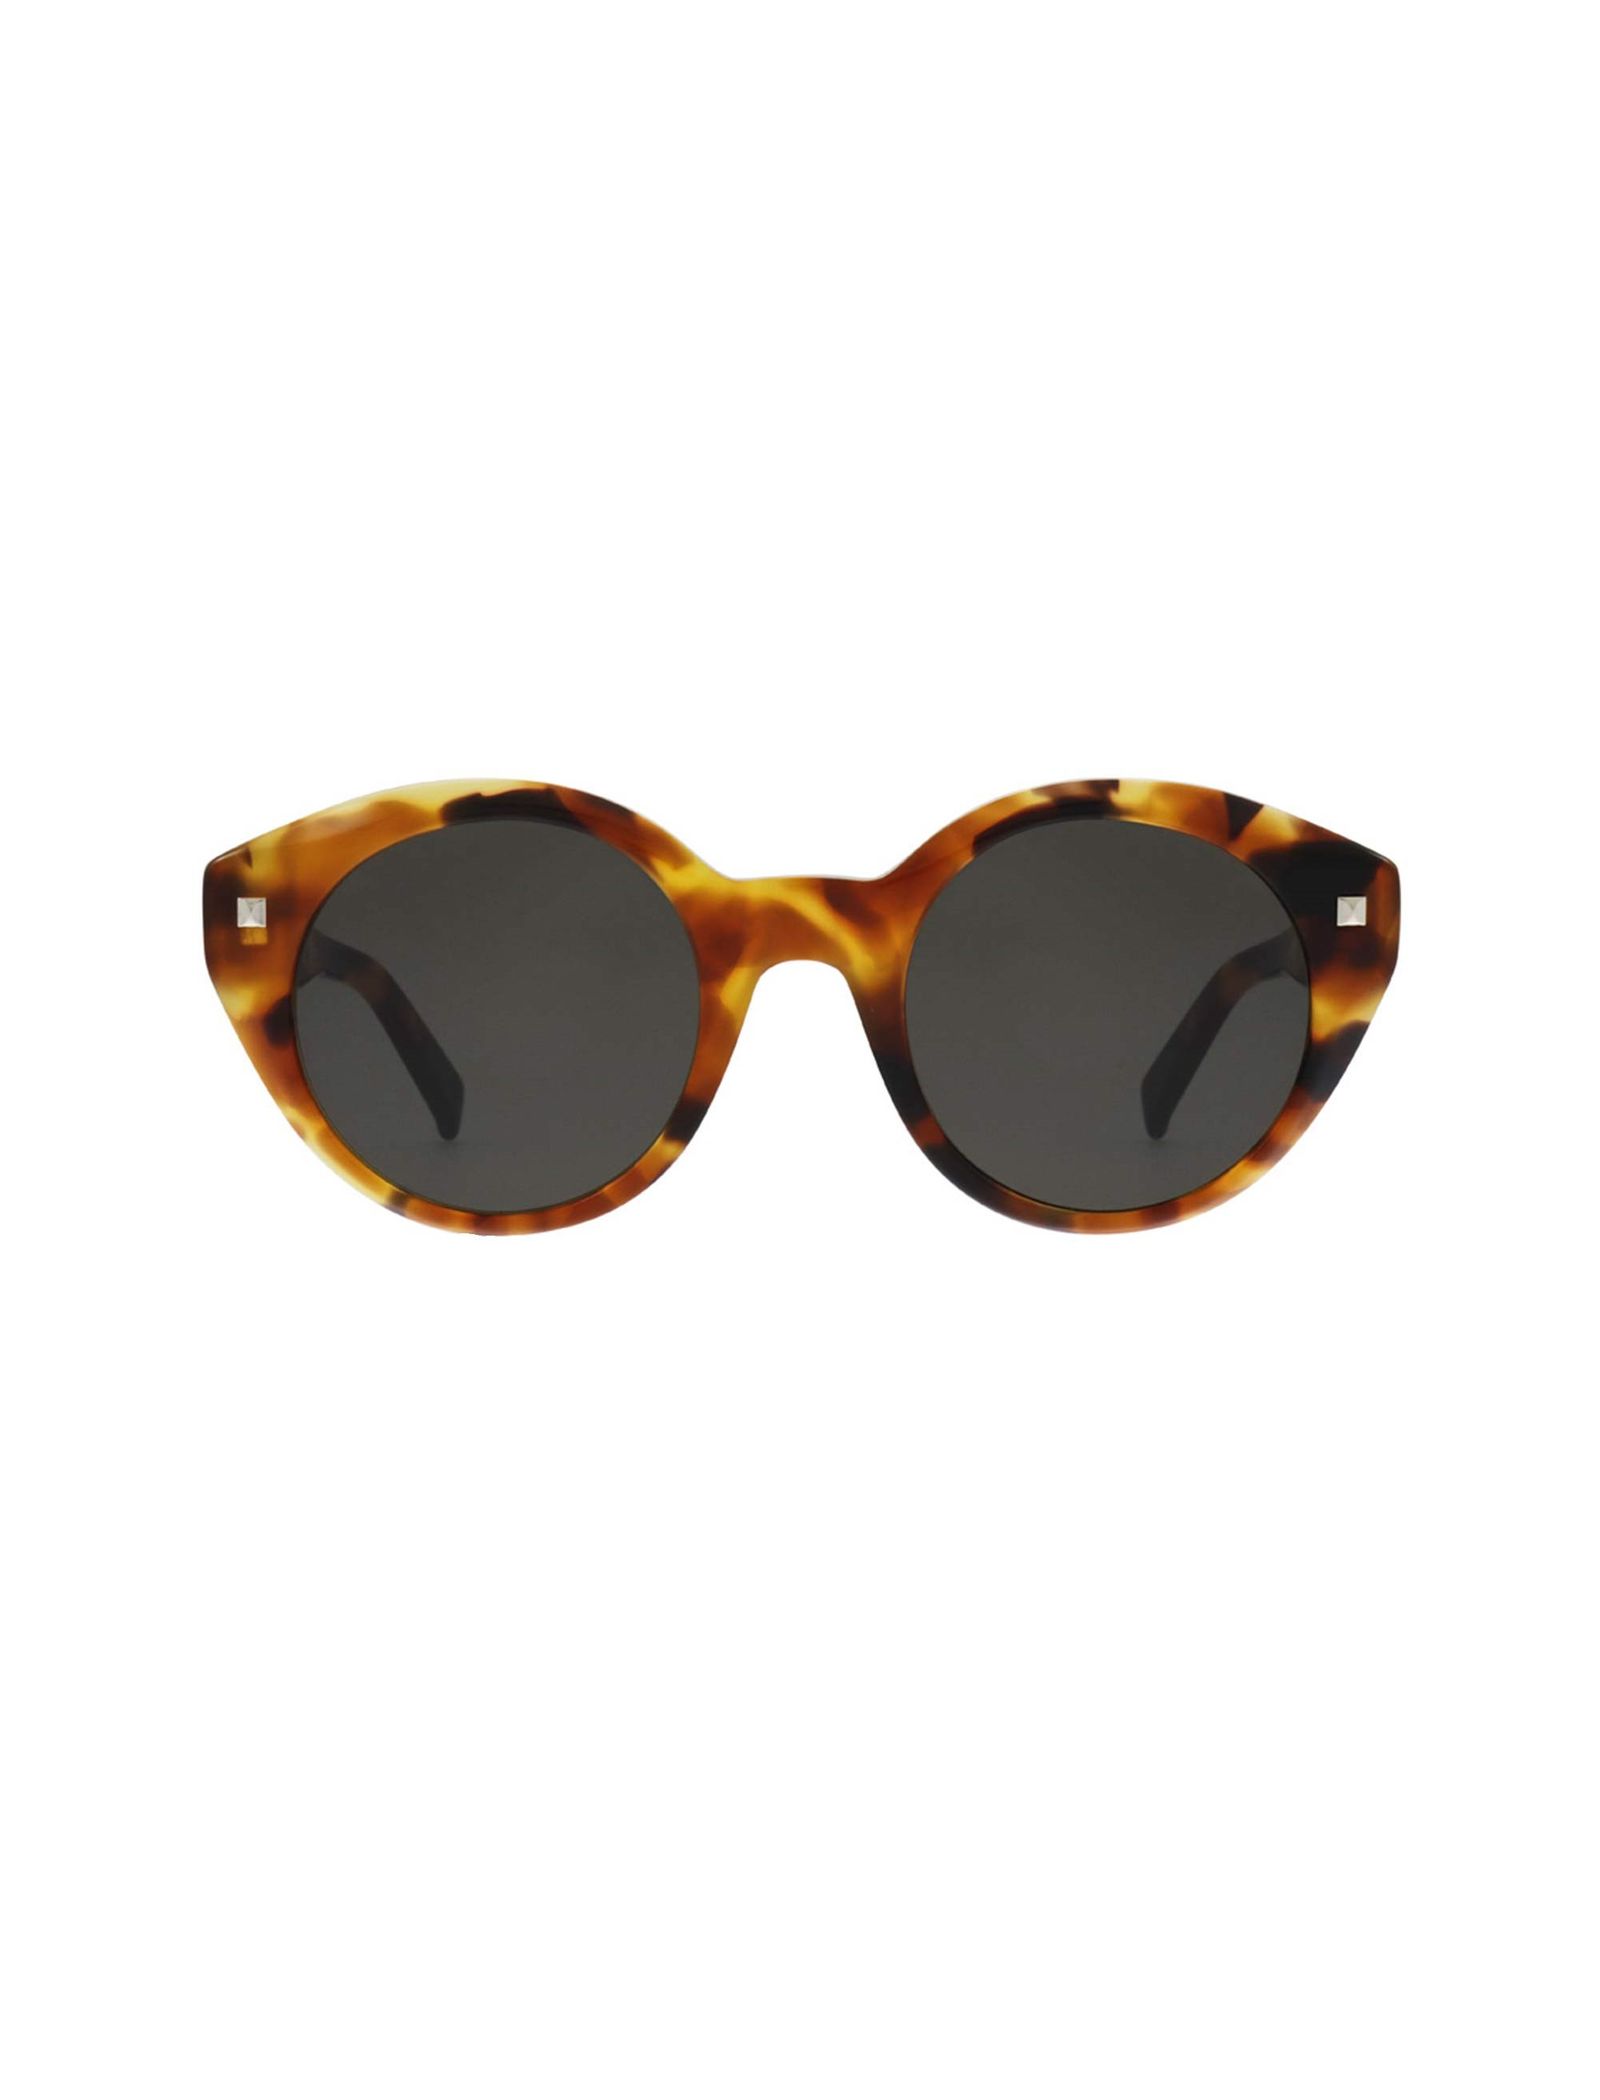 عینک آفتابی گربه ای زنانه - مکس مارا - قهوه اي و نارنجي - 2